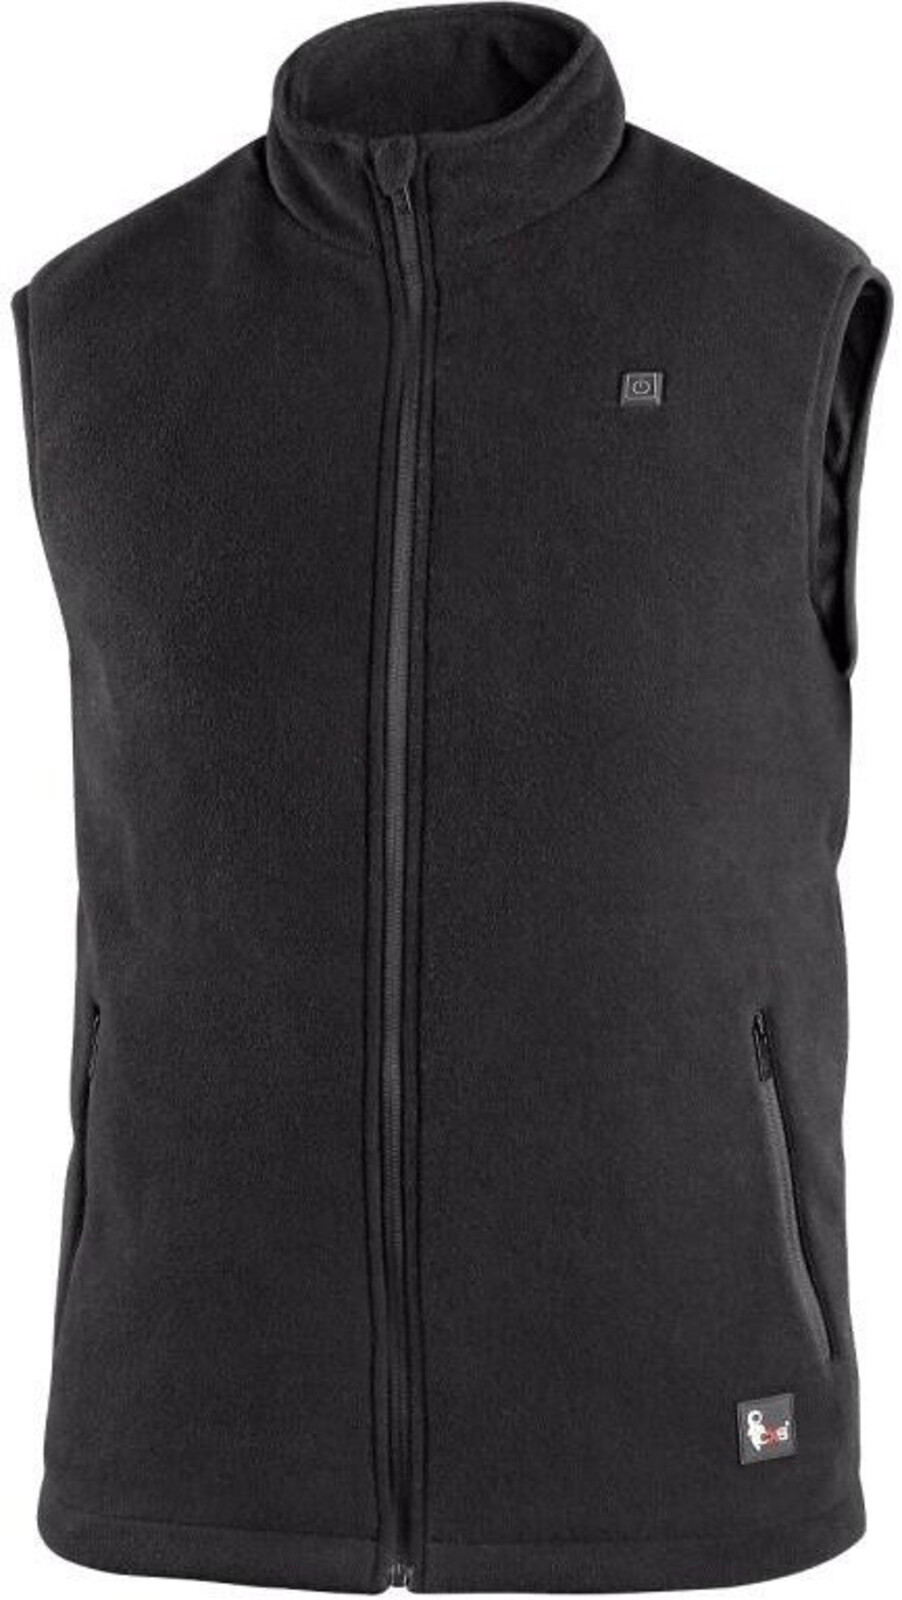 Pánska fleecová vyhrievaná vesta CXS Antarktida - veľkosť: XXL, farba: čierna